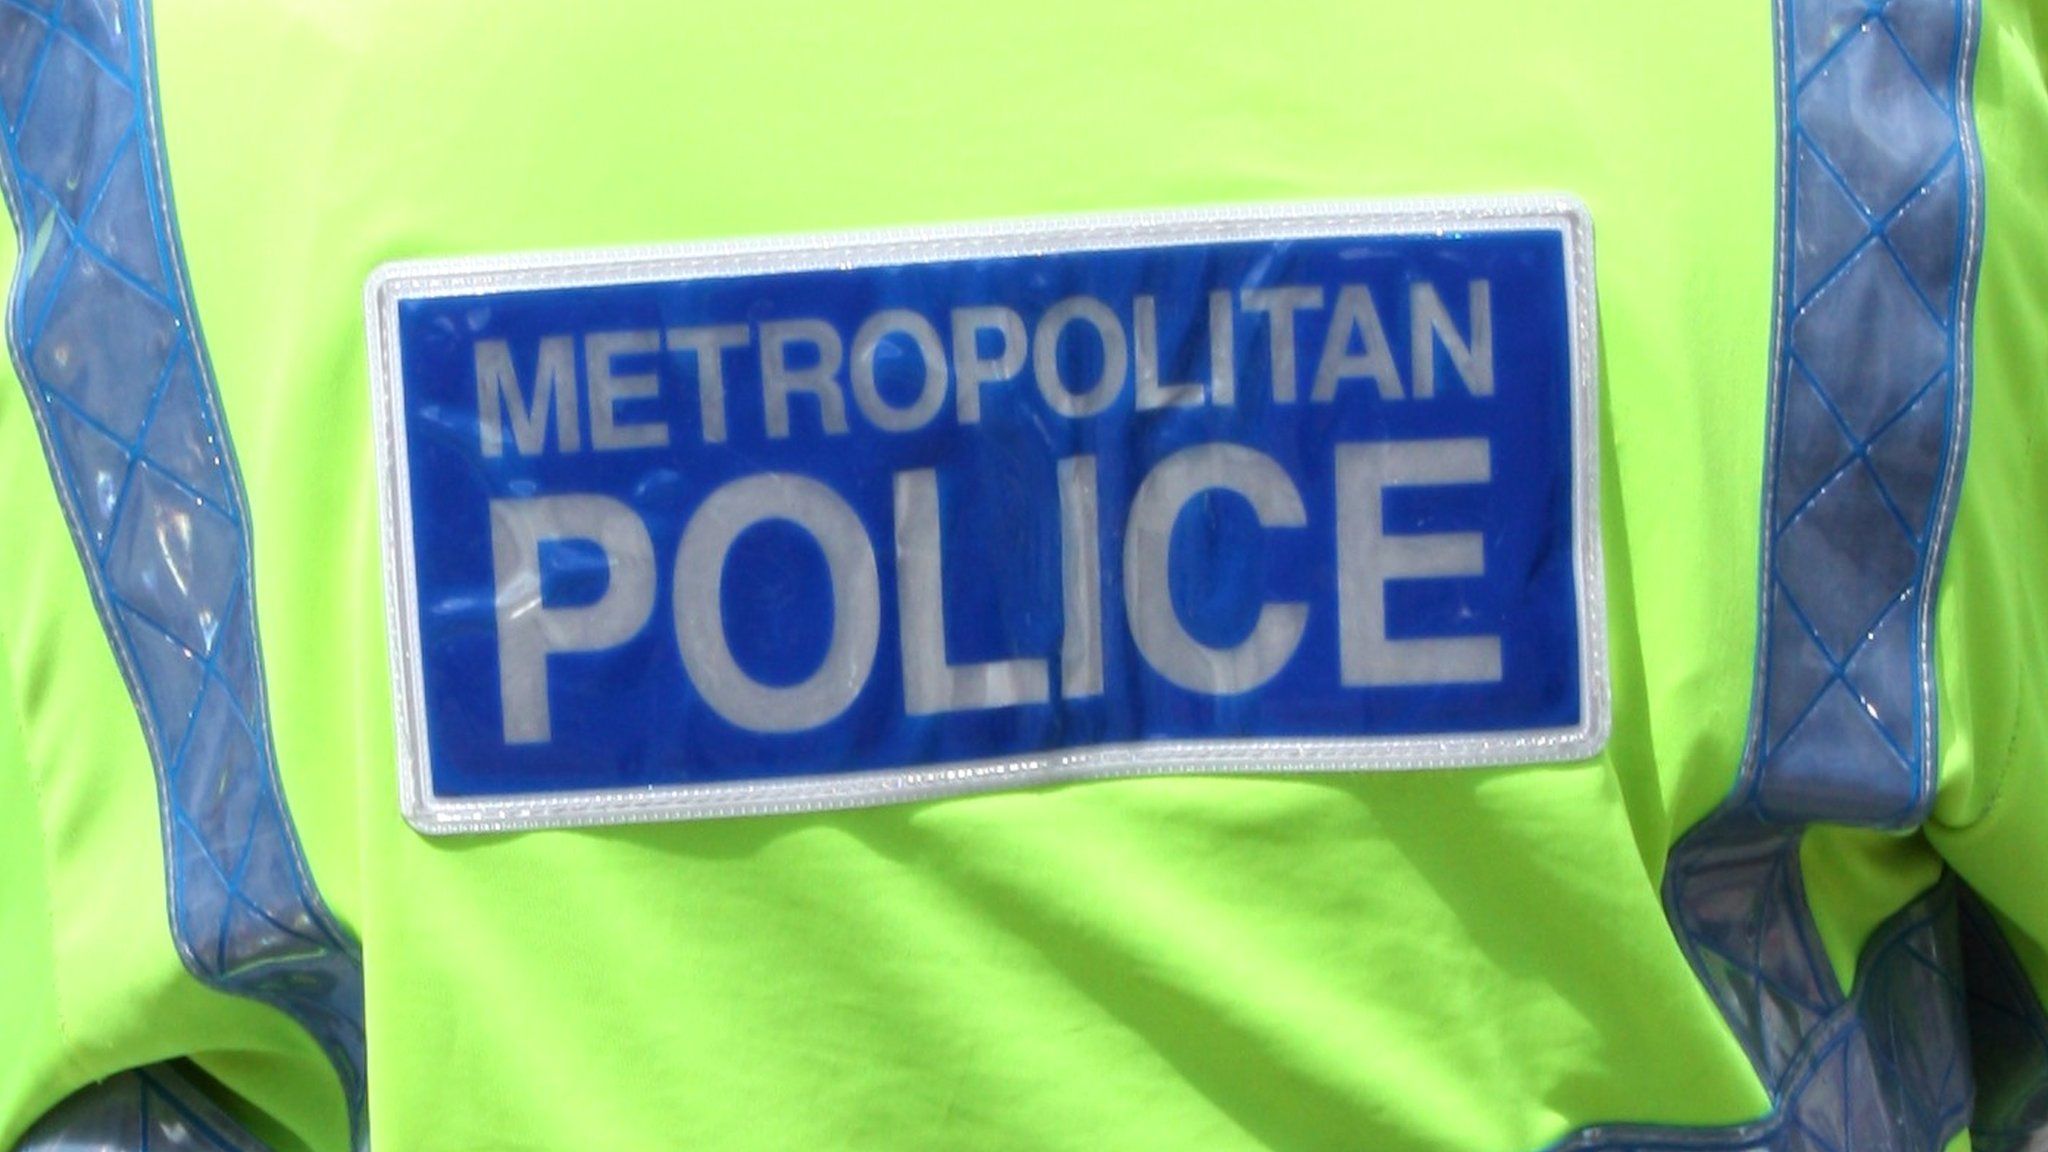 Metropolitan Police fluorescent jacket